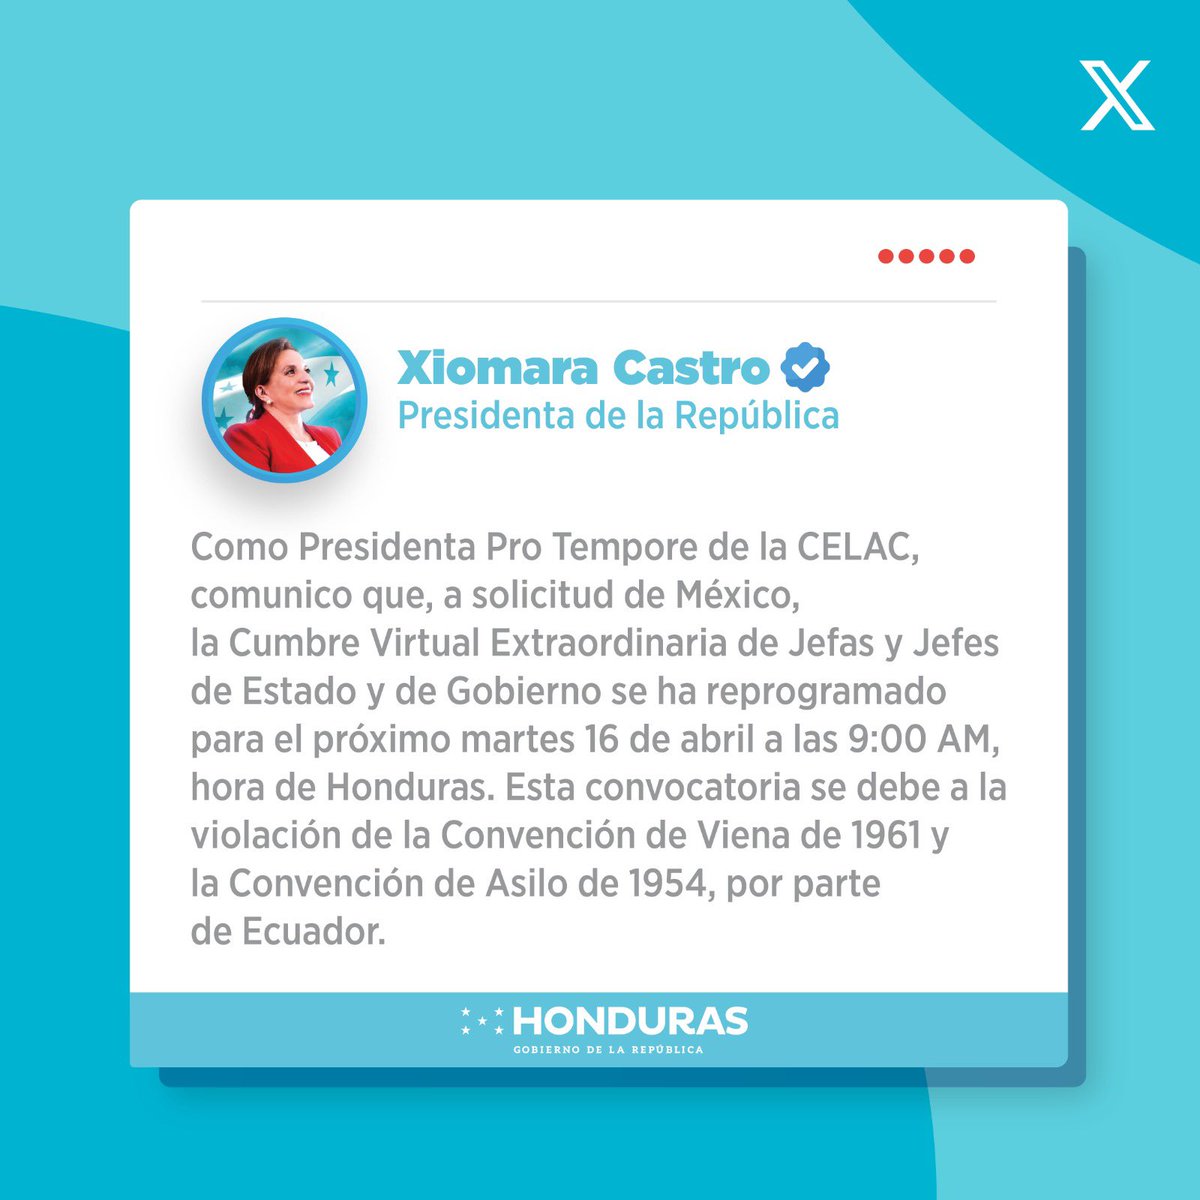 📌 ¡Atención! La Presidenta @XiomaraCastroZ en su condición de Presidenta Pro Tempore de la CELAC comunica que ha reprogramado la Cumbre Virtual de Jefes y Jefas de Estado para el día martes 16 de abril a las 9:00 a.m. hora de Honduras.